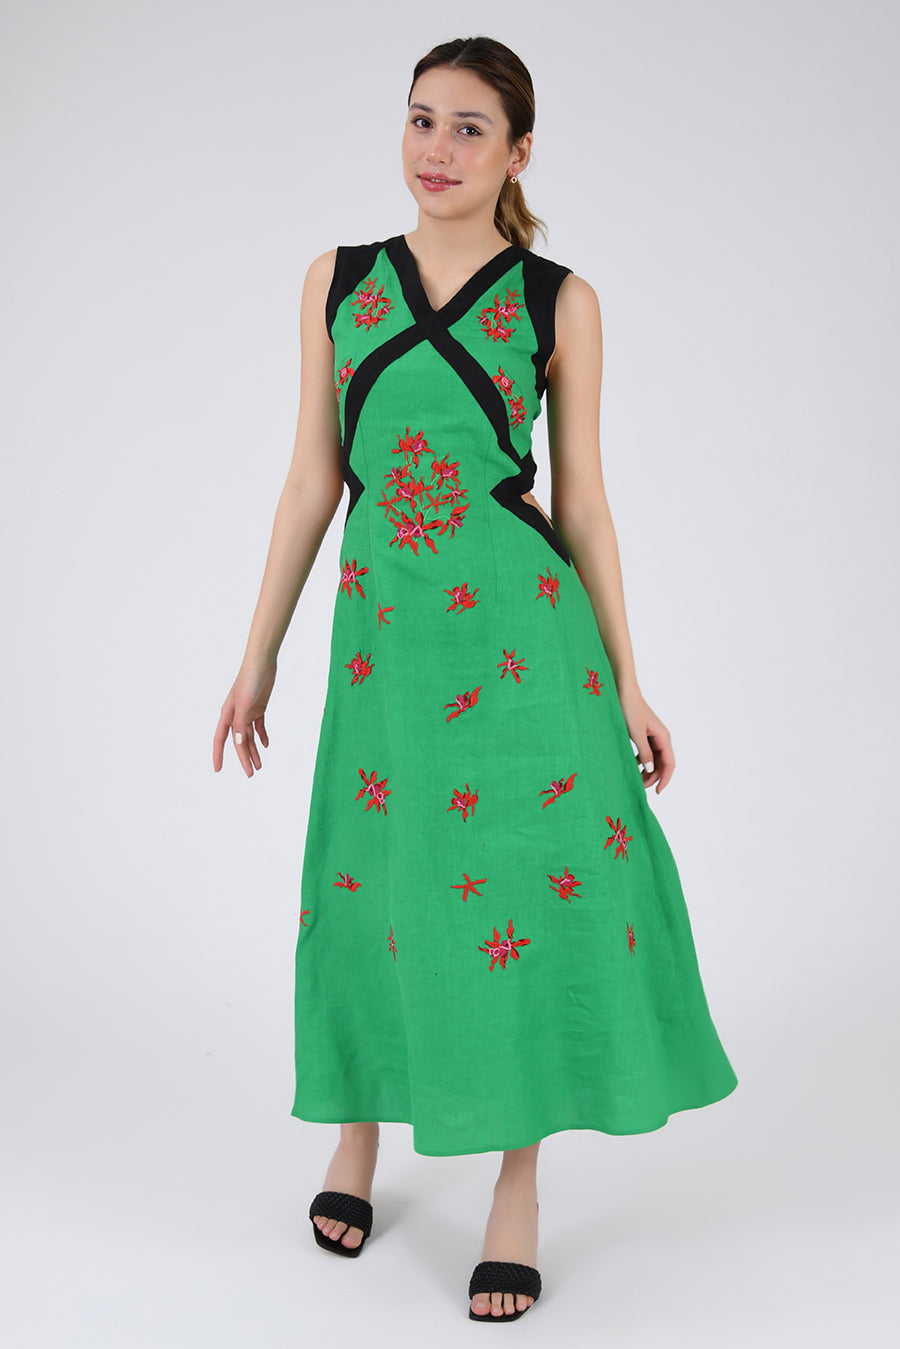 Loa Dress by Fanm Mon in Kelly Green